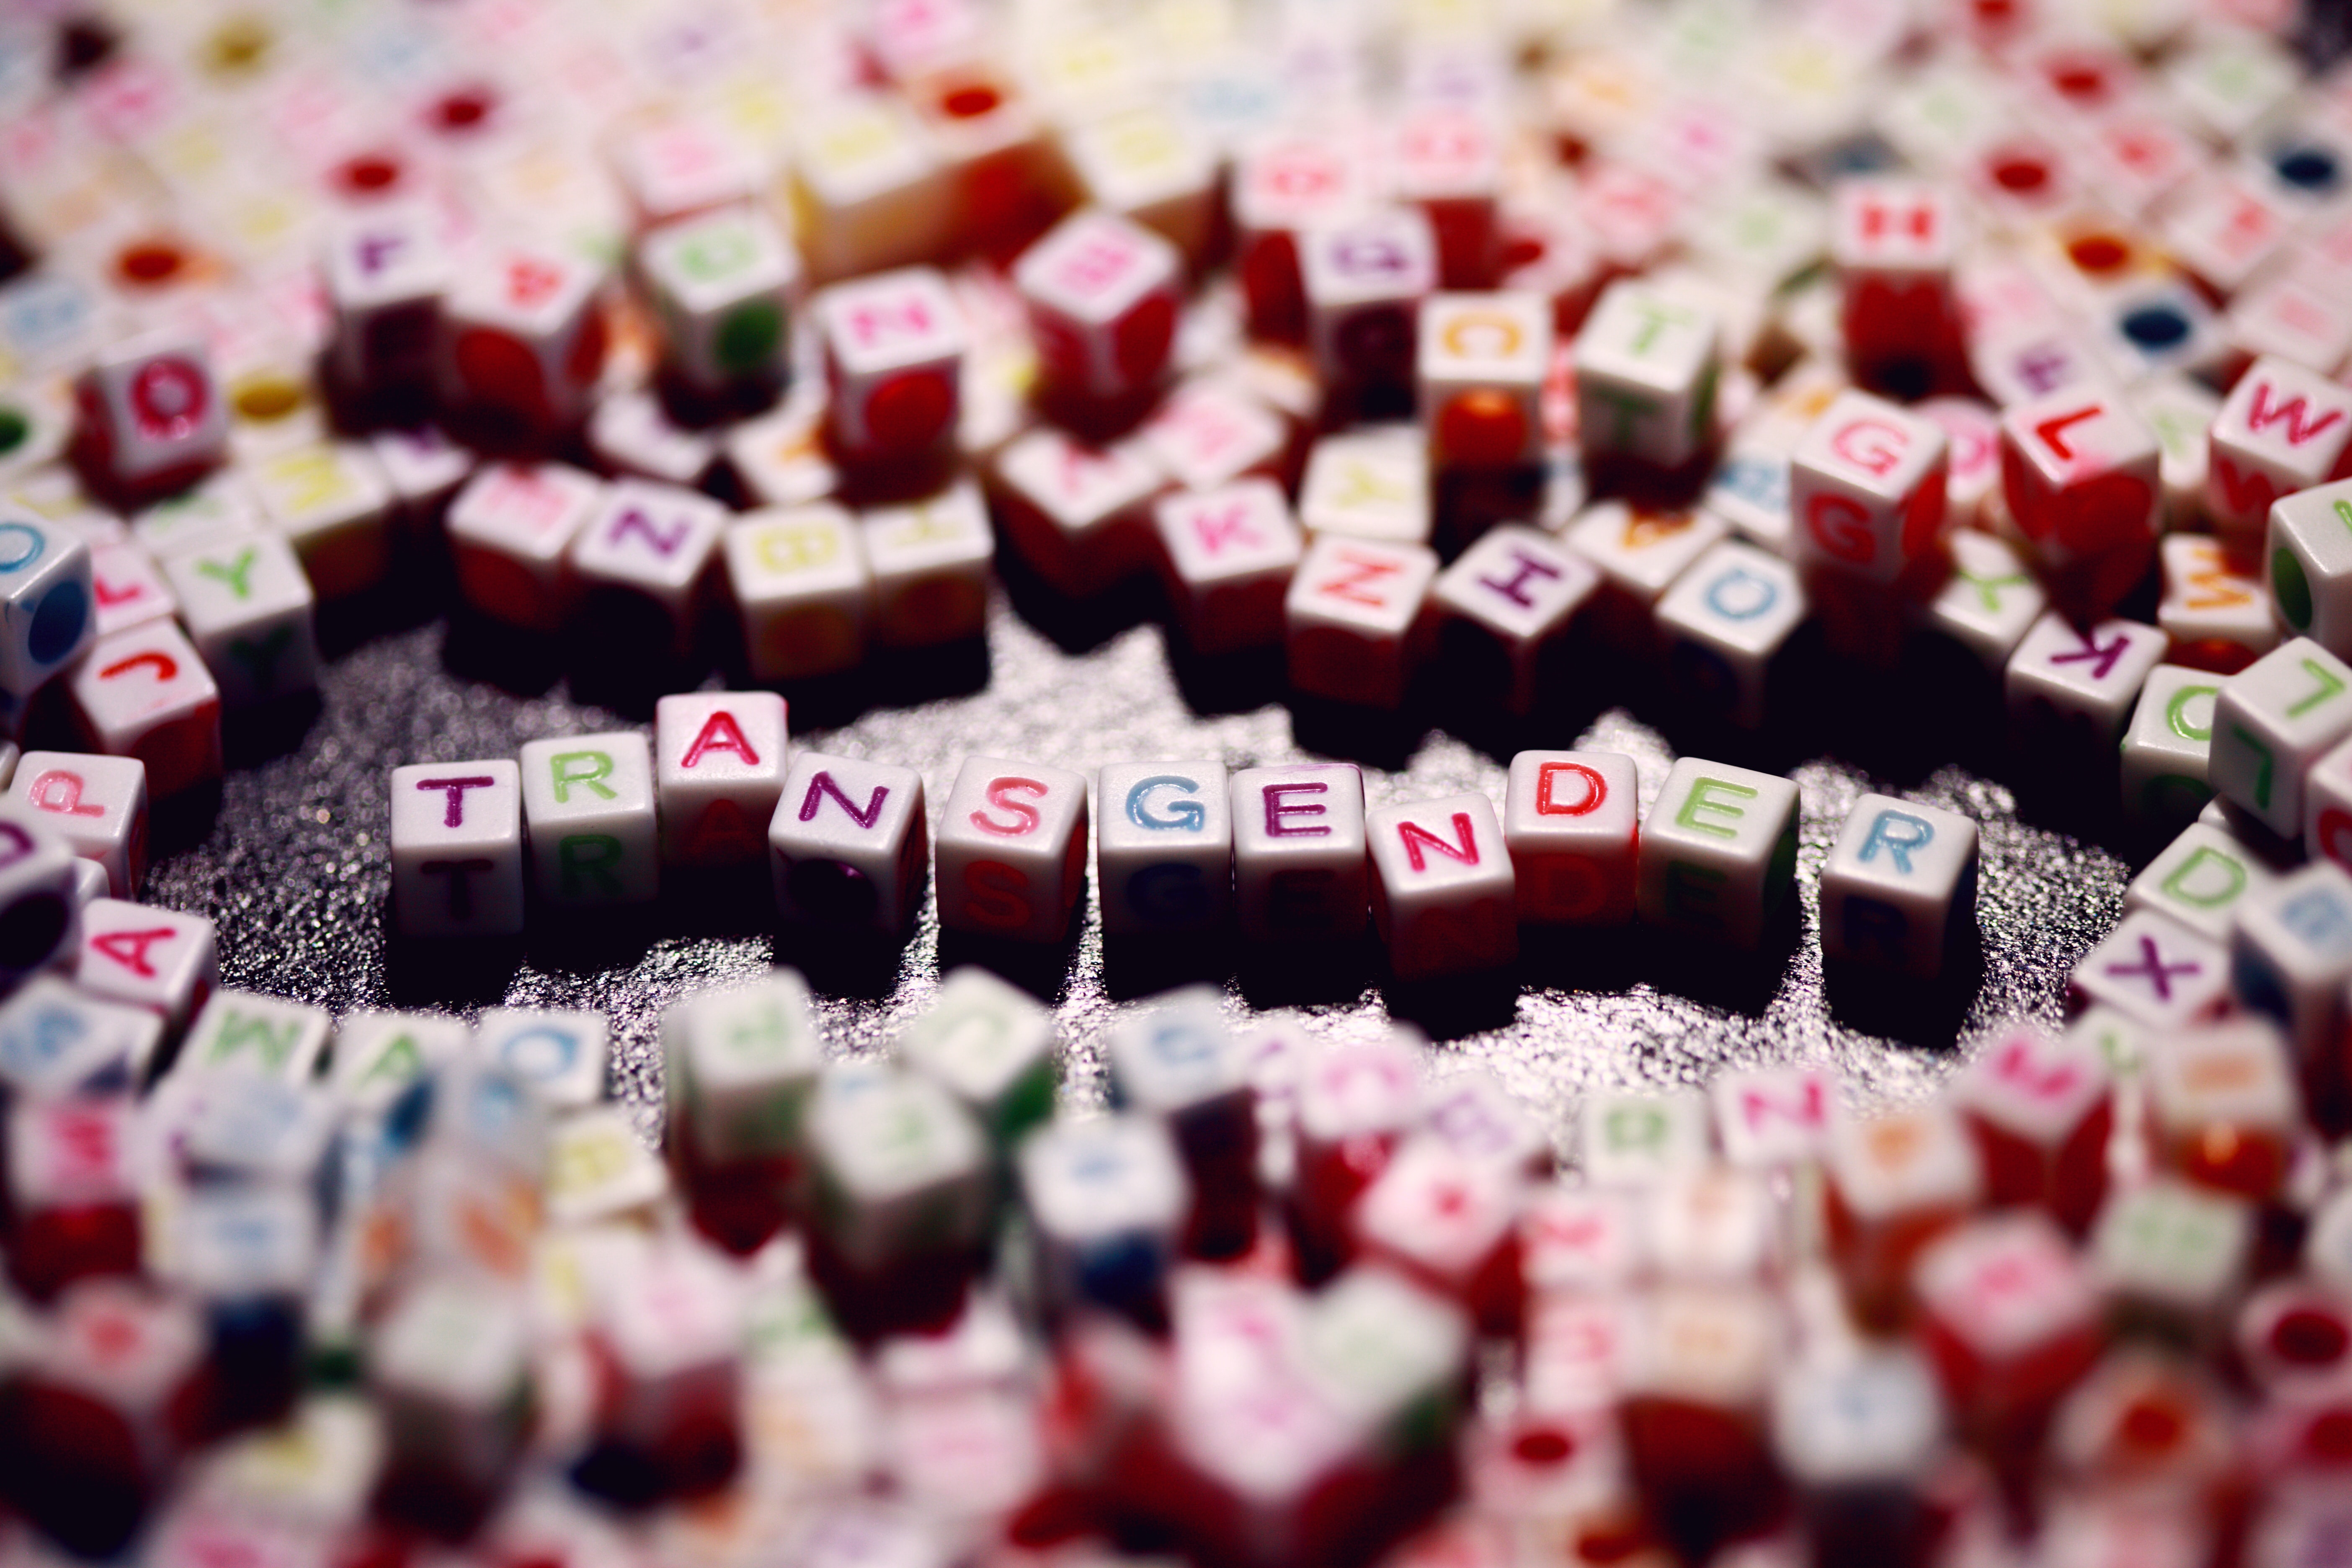 Colourful letter tiles spelling the word transgender